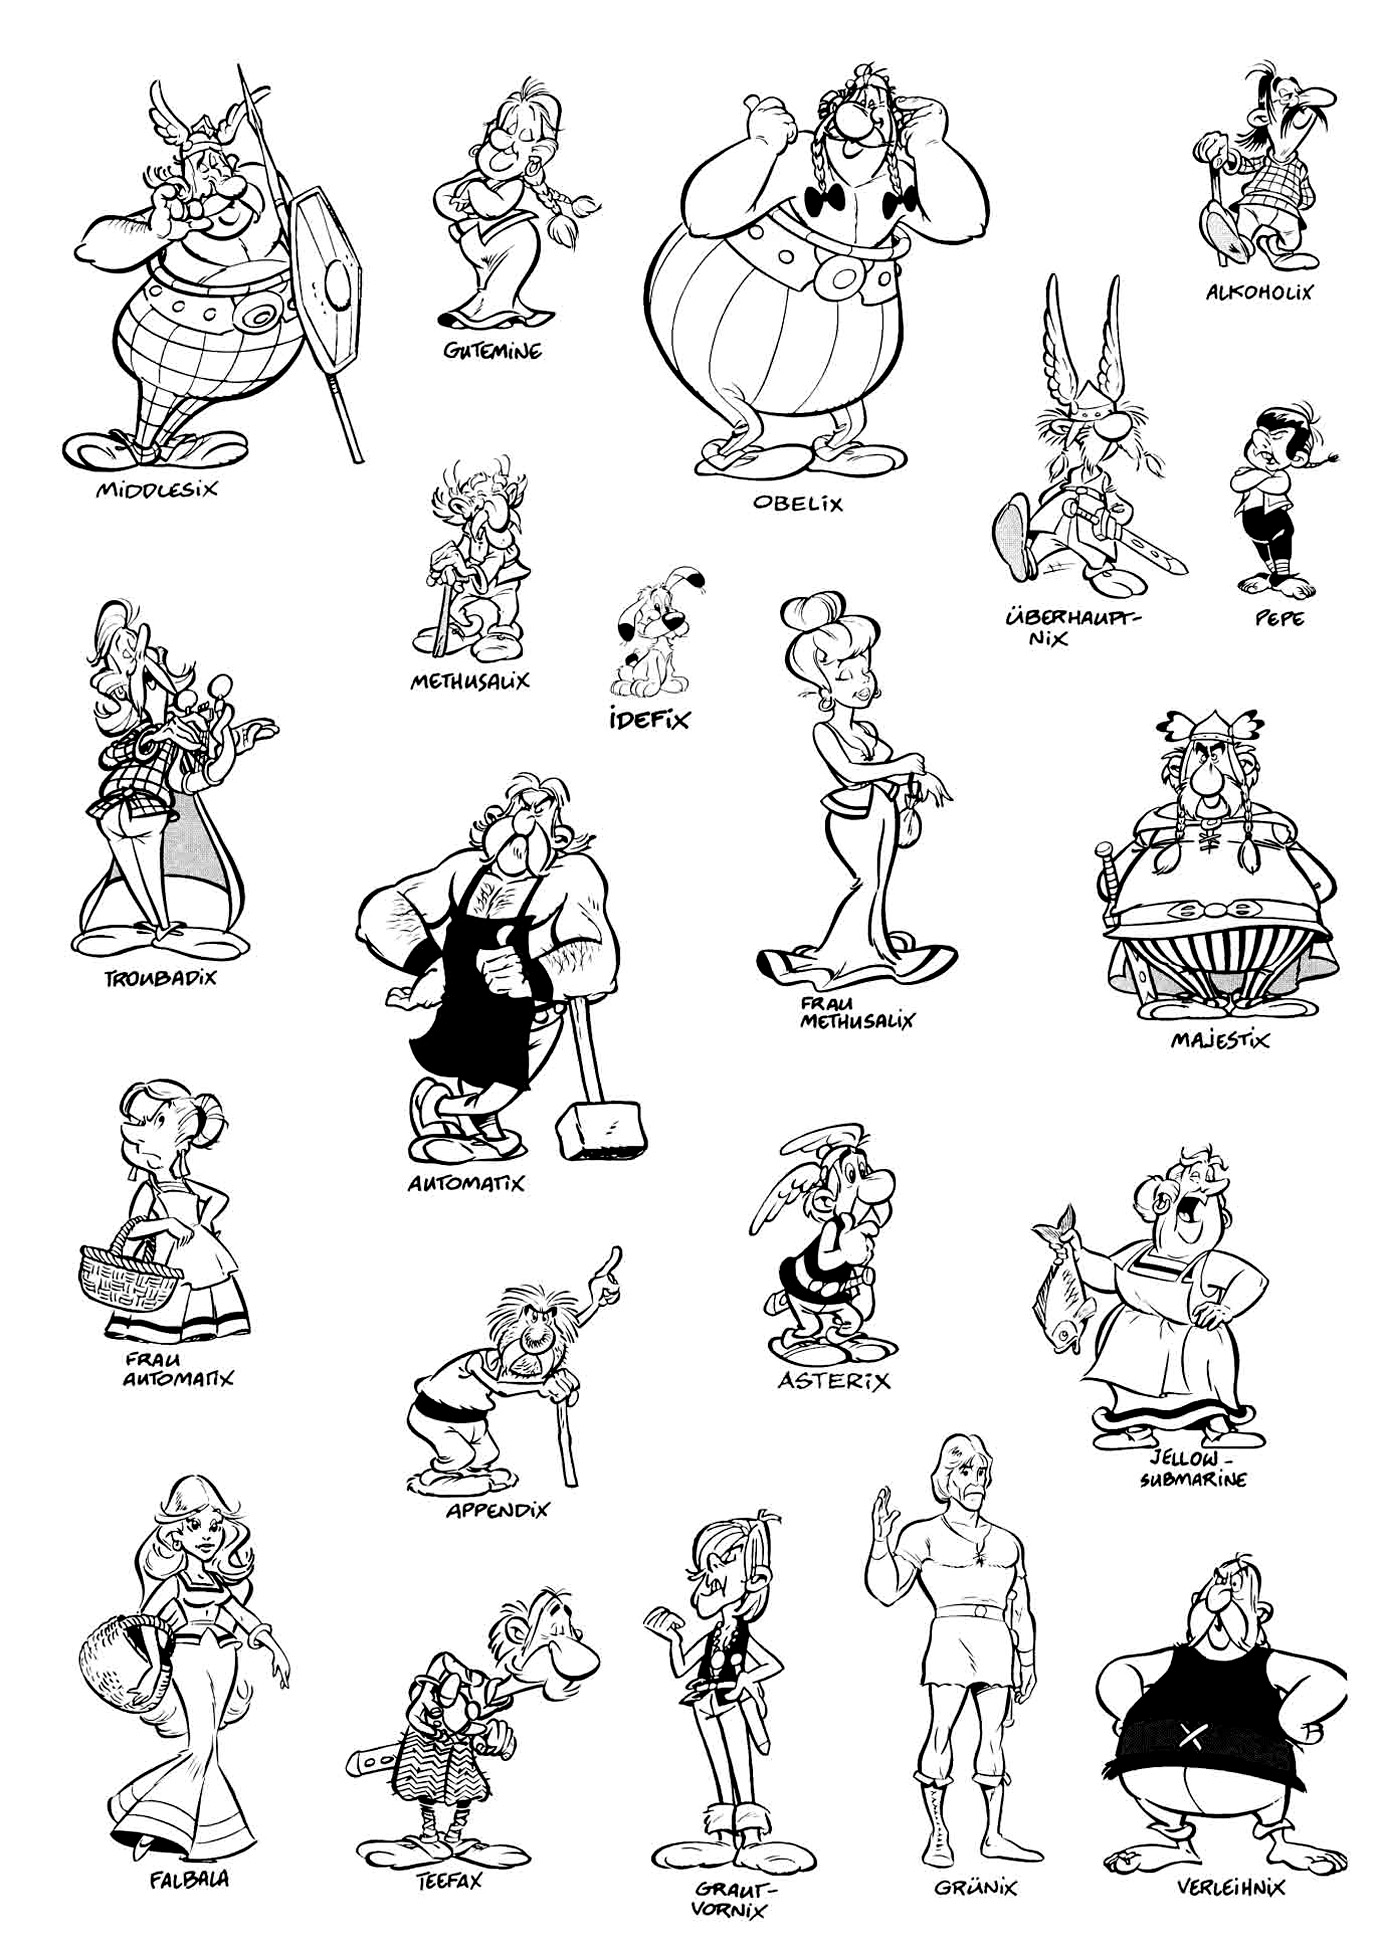 Personaggi di Asterix. Vari personaggi di Asterix